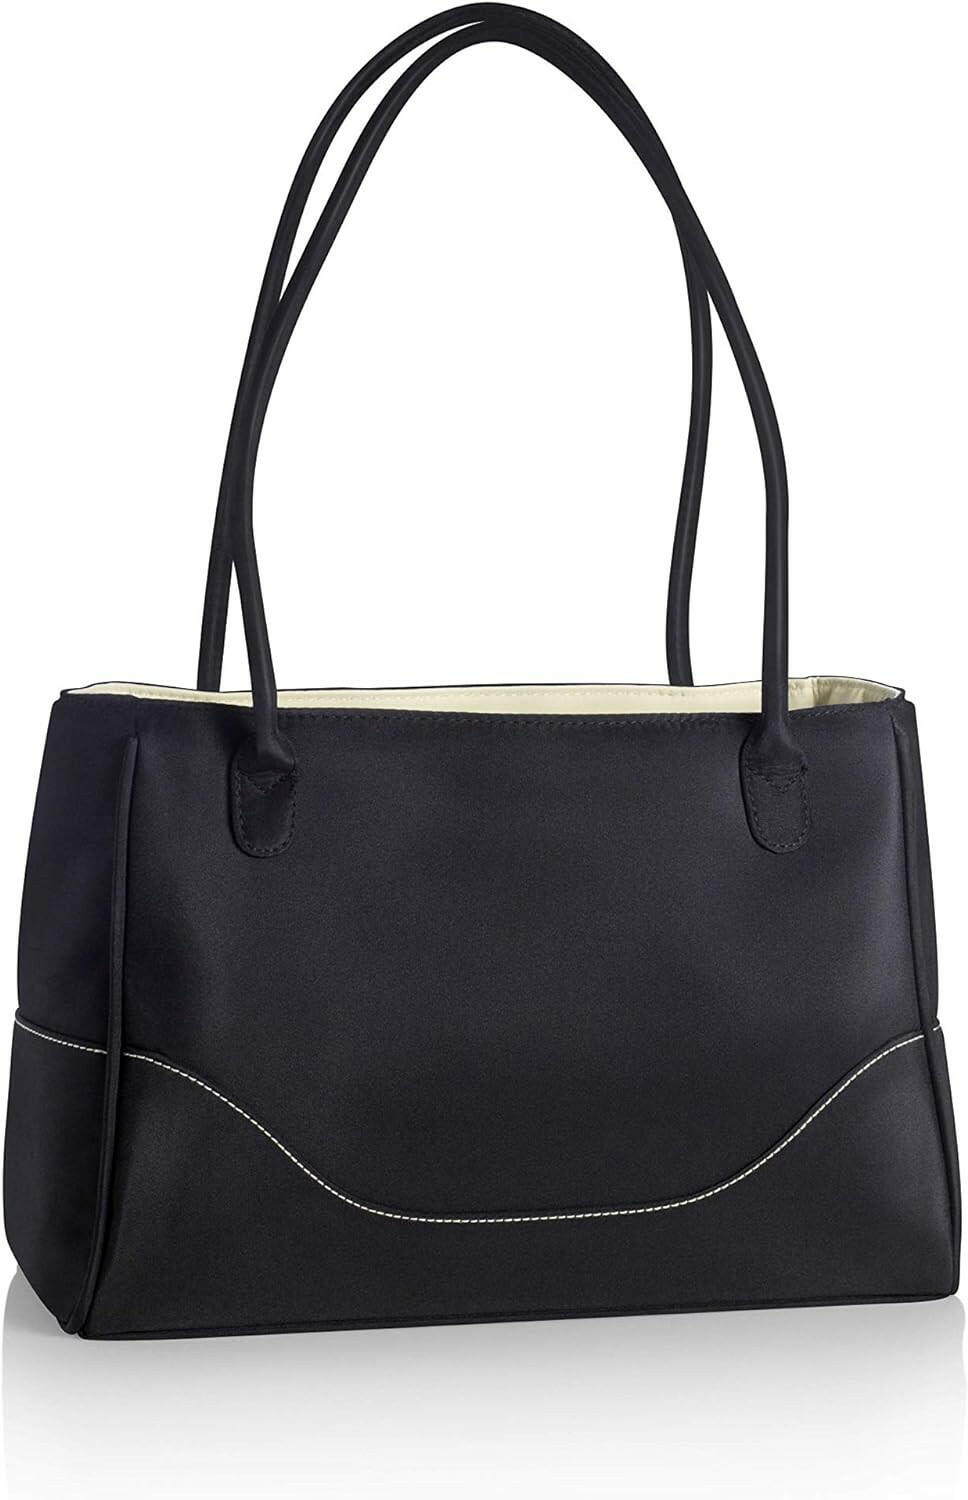 Medela City Style Bag - Black